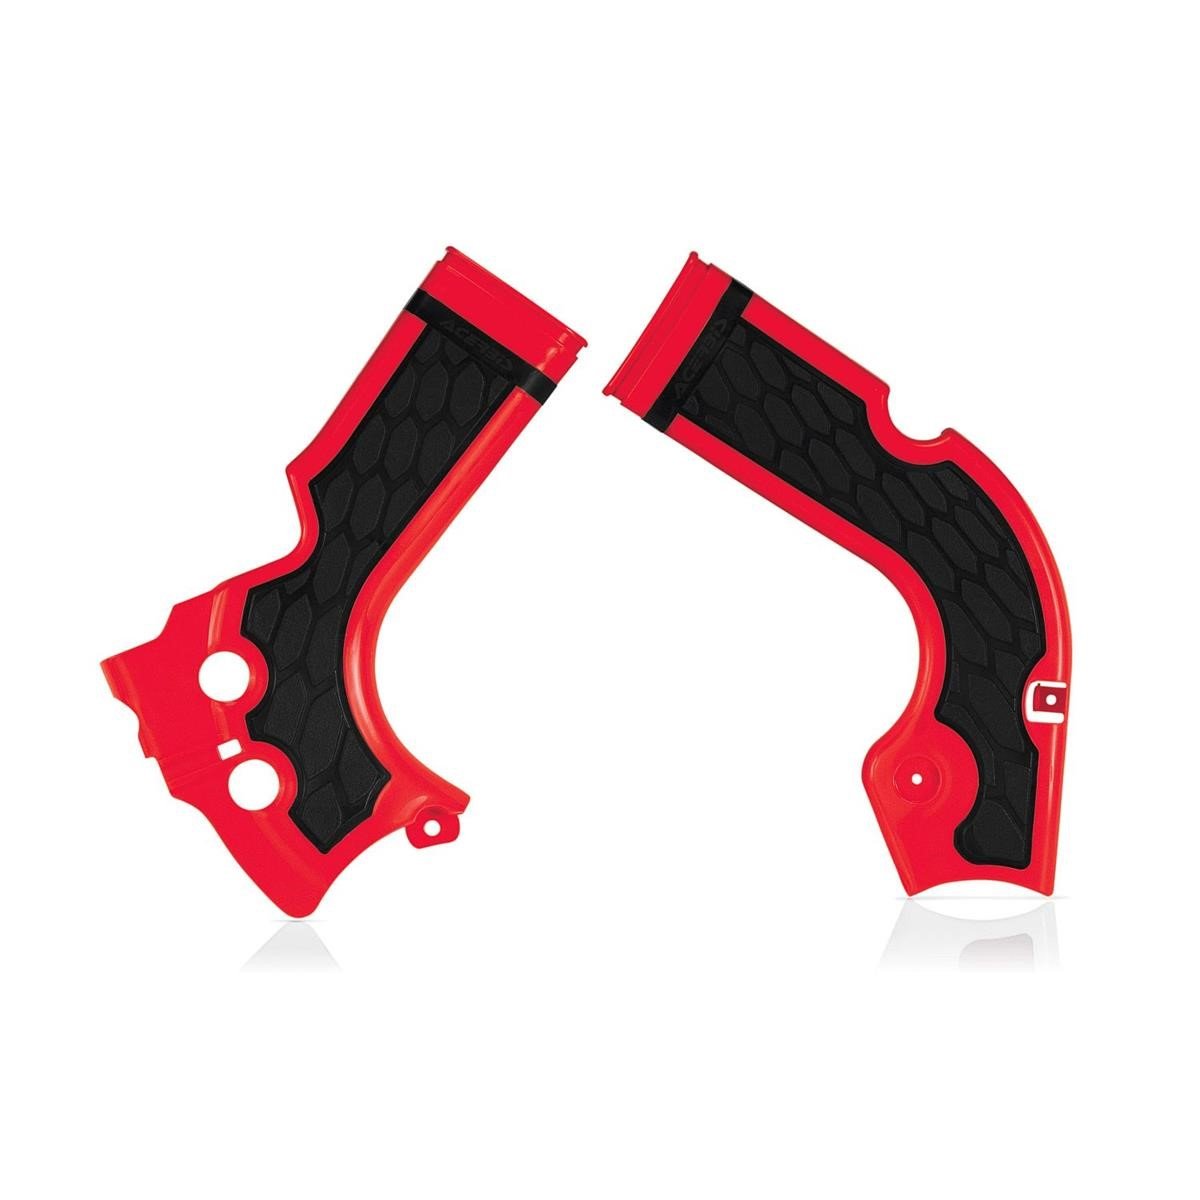 Acerbis Protections de Cadre Anti-Dérapante X-Grip Honda CRF 250 14-17, CRF 450 13-16, Rouge/Noir